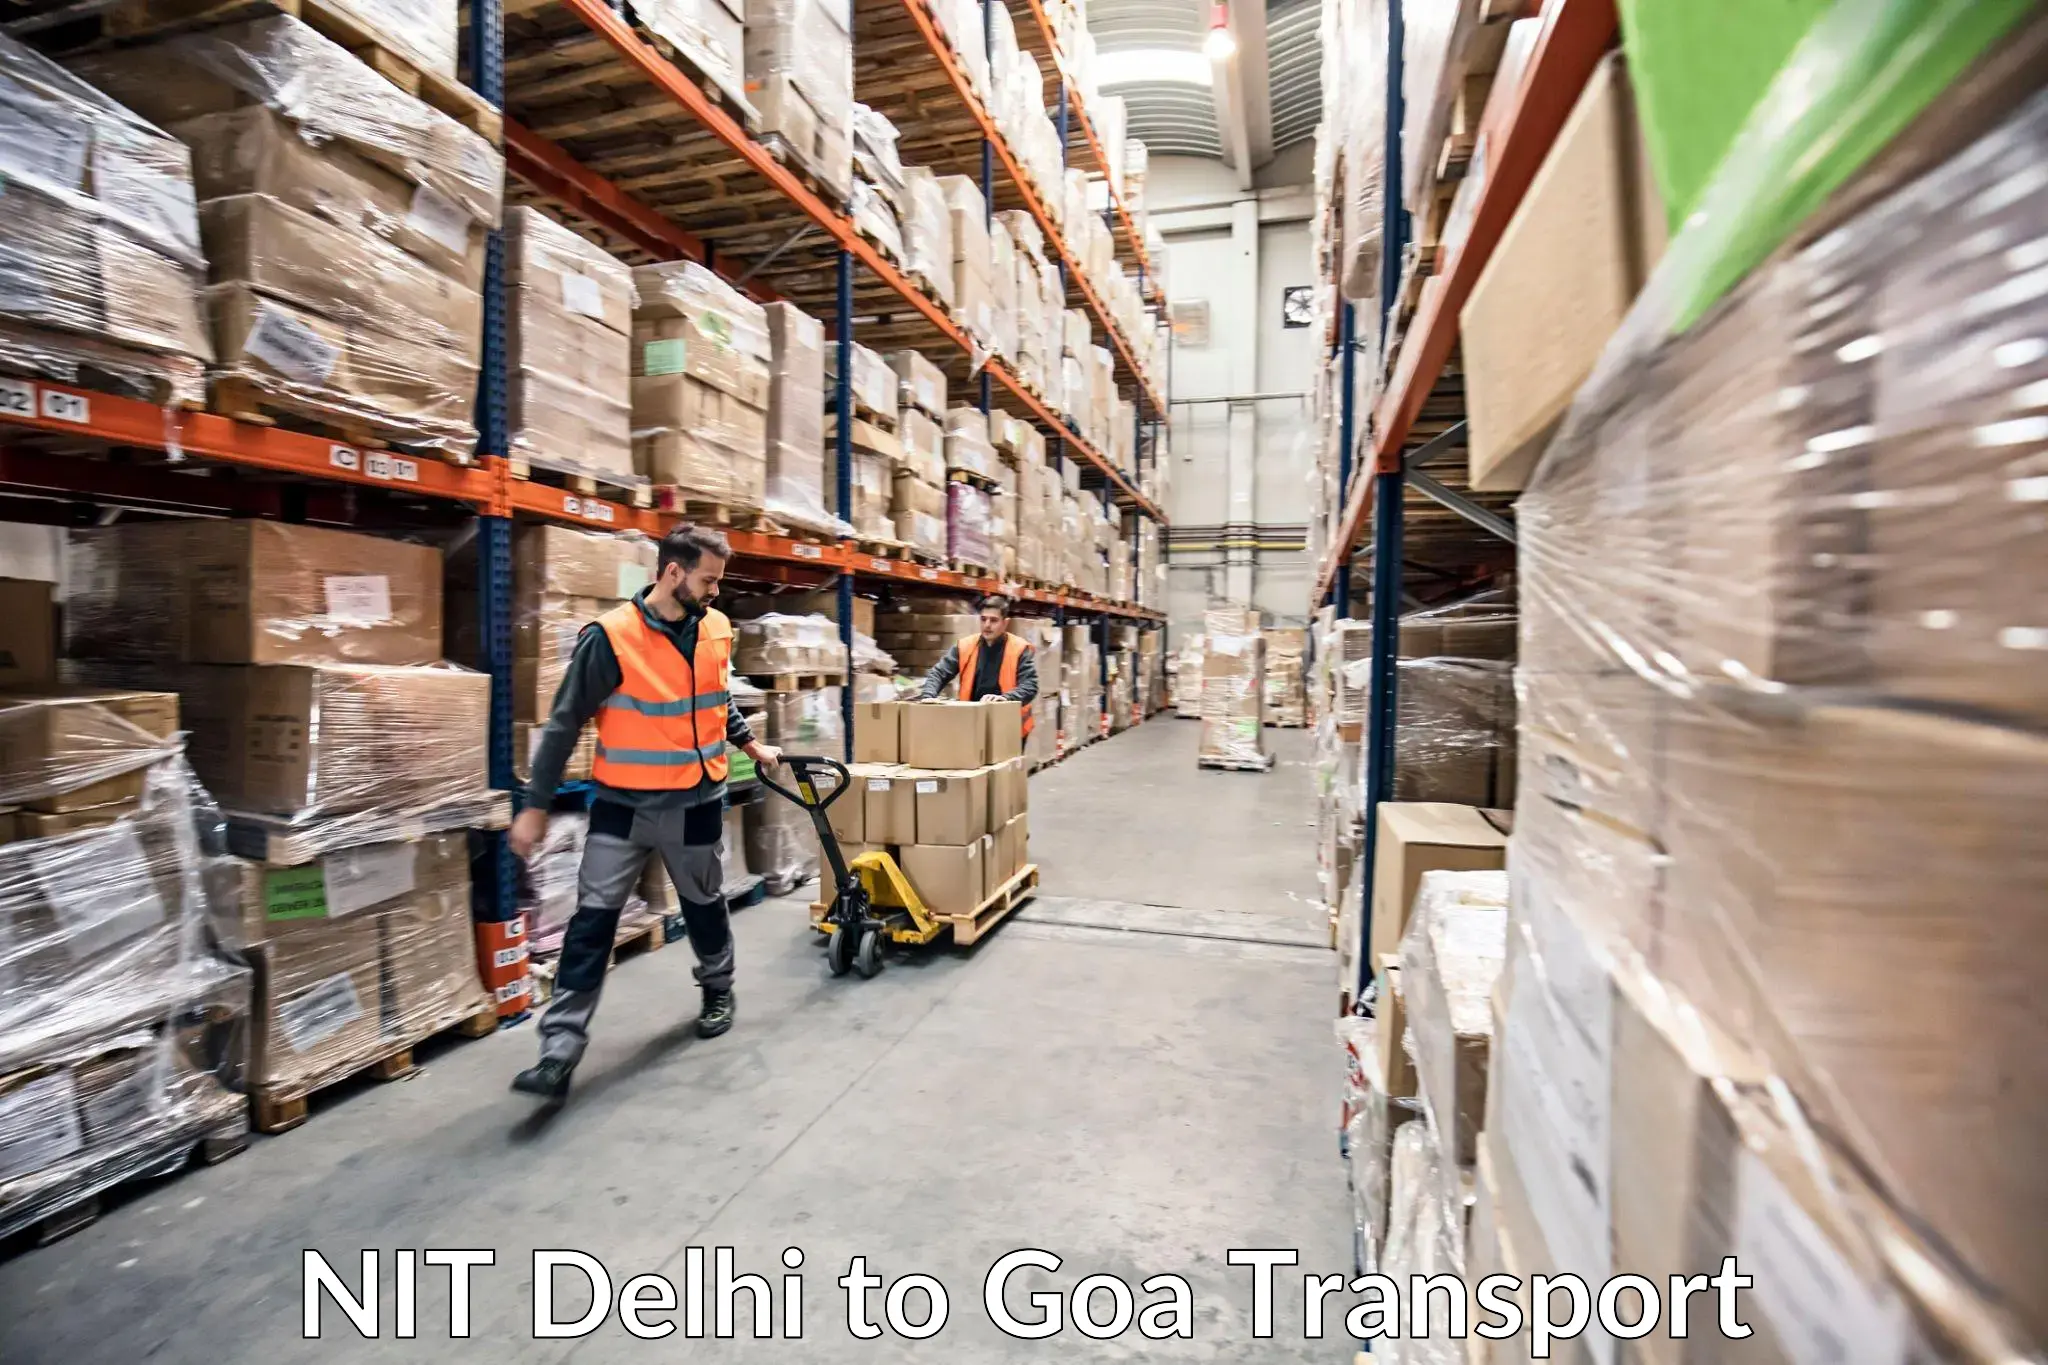 Bike shipping service NIT Delhi to NIT Goa